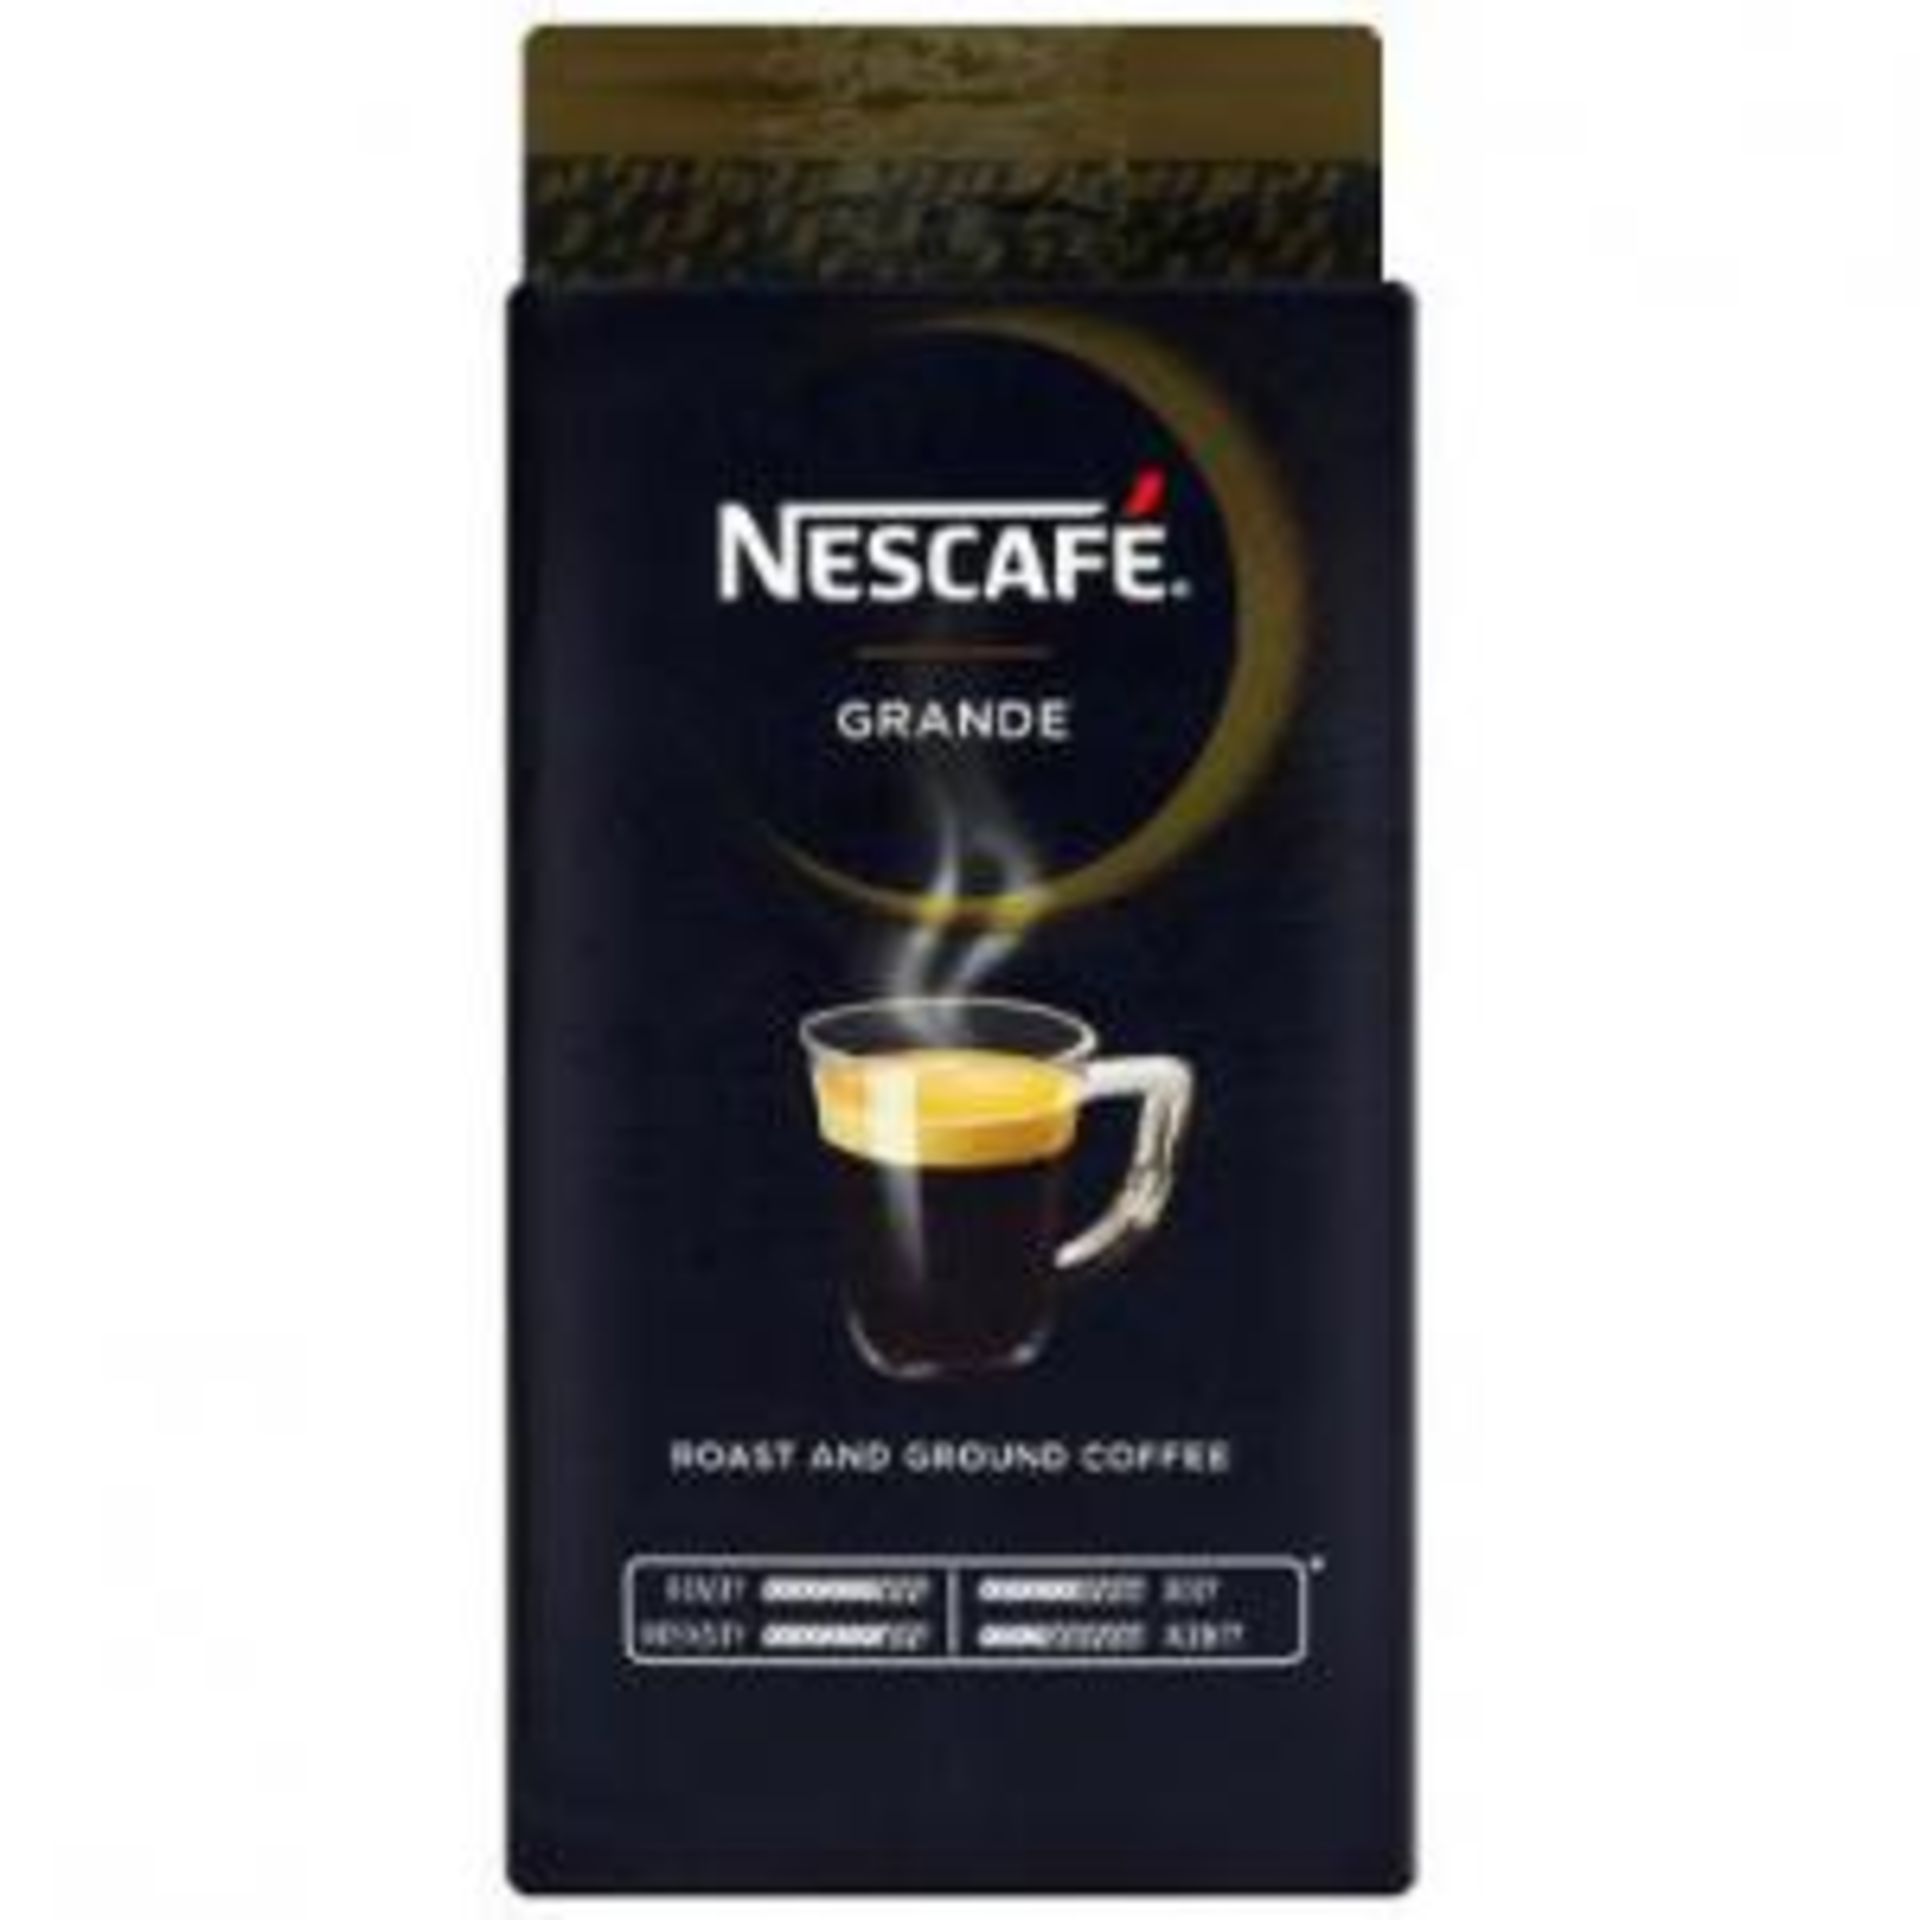 RRP £553 Nescafe Bbe - 2.24